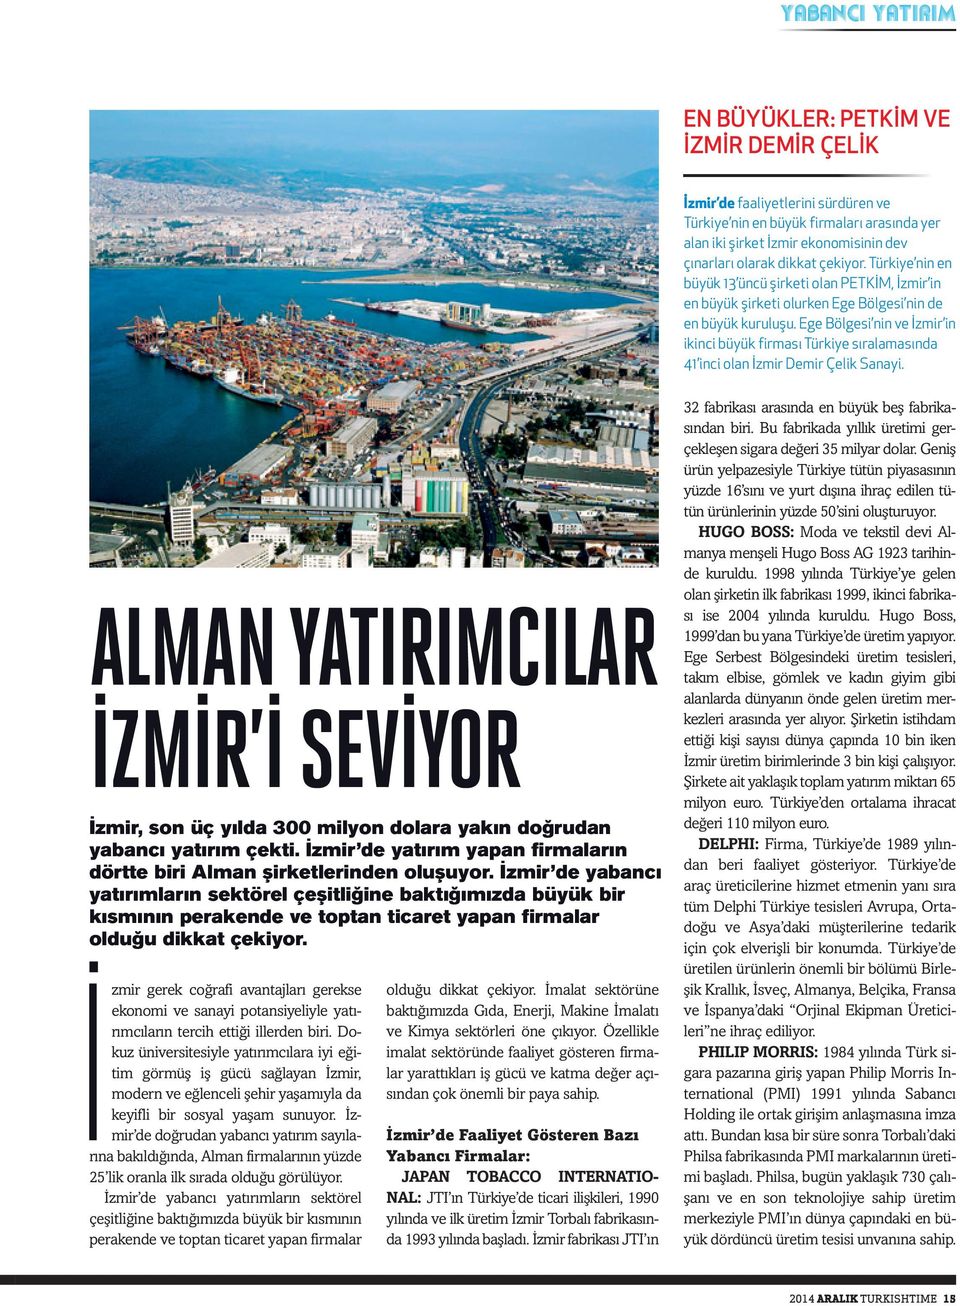 Ege Bölgesi nin ve İzmir in ikinci büyük firması Türkiye sıralamasında 41 inci olan İzmir Demir Çelik Sanayi.